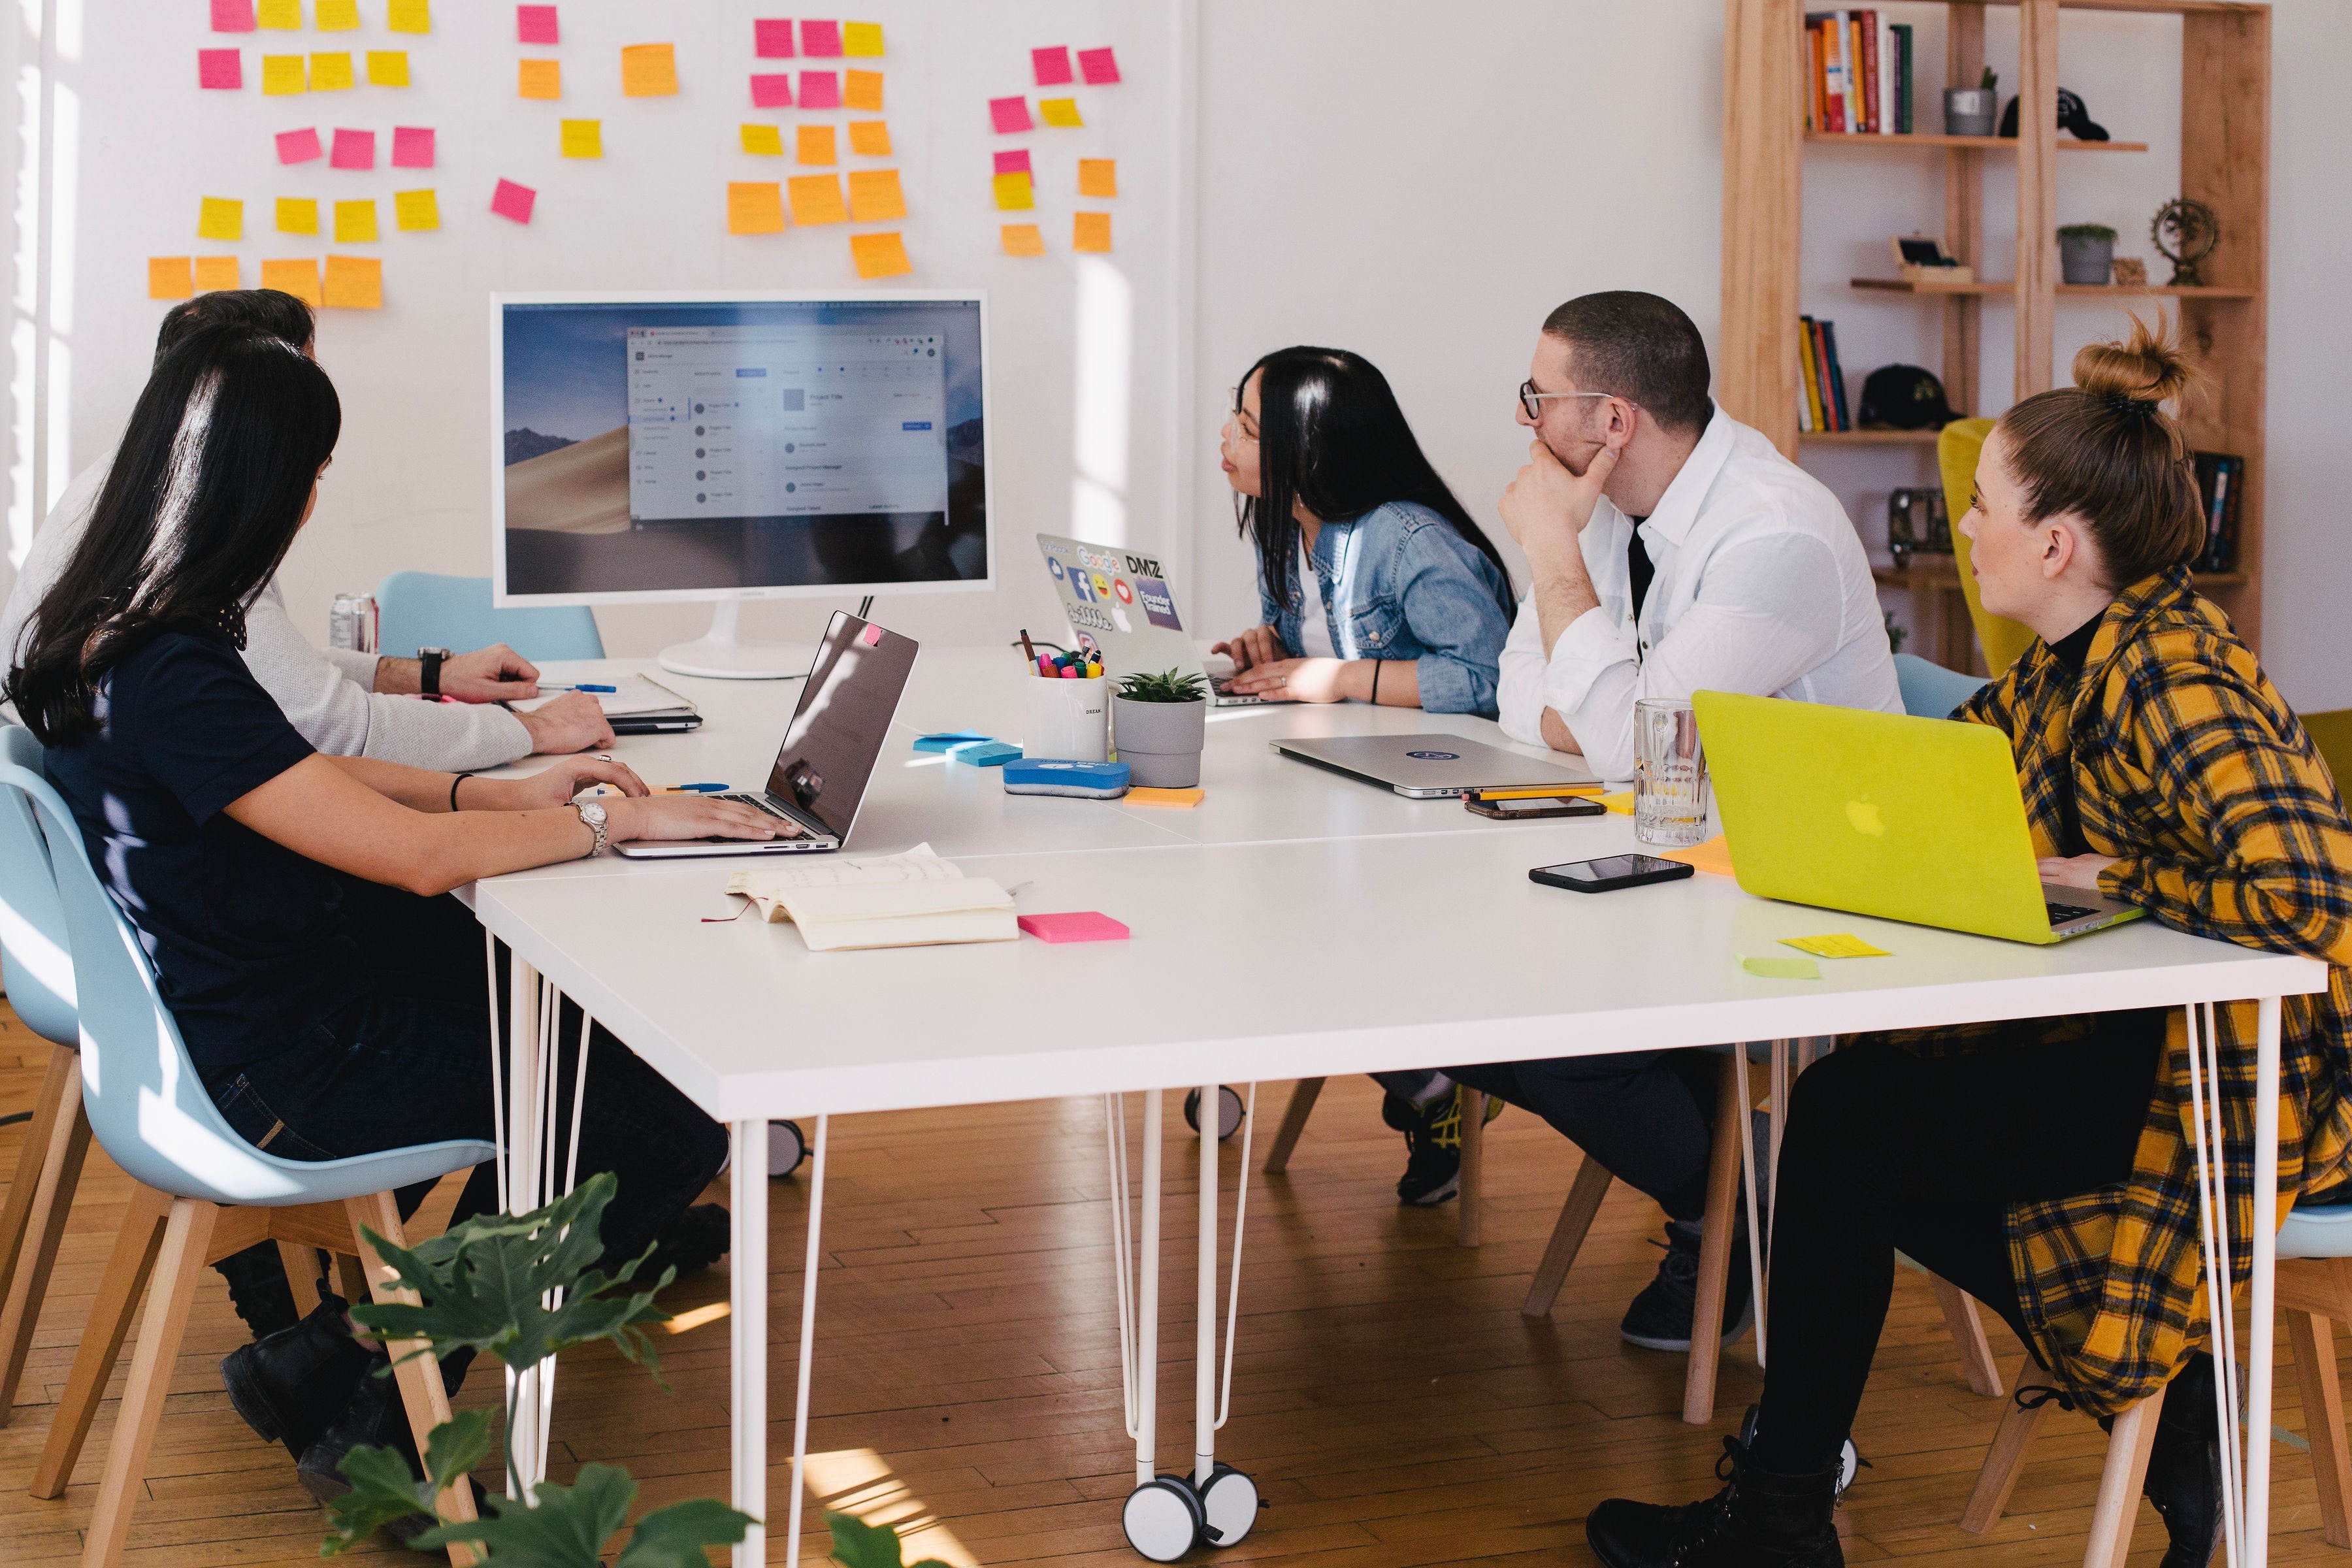 Equipe sentada em uma mesa branca olhando para um quadro com post-its coloridos criando um plano de redução de custos para a empresa.